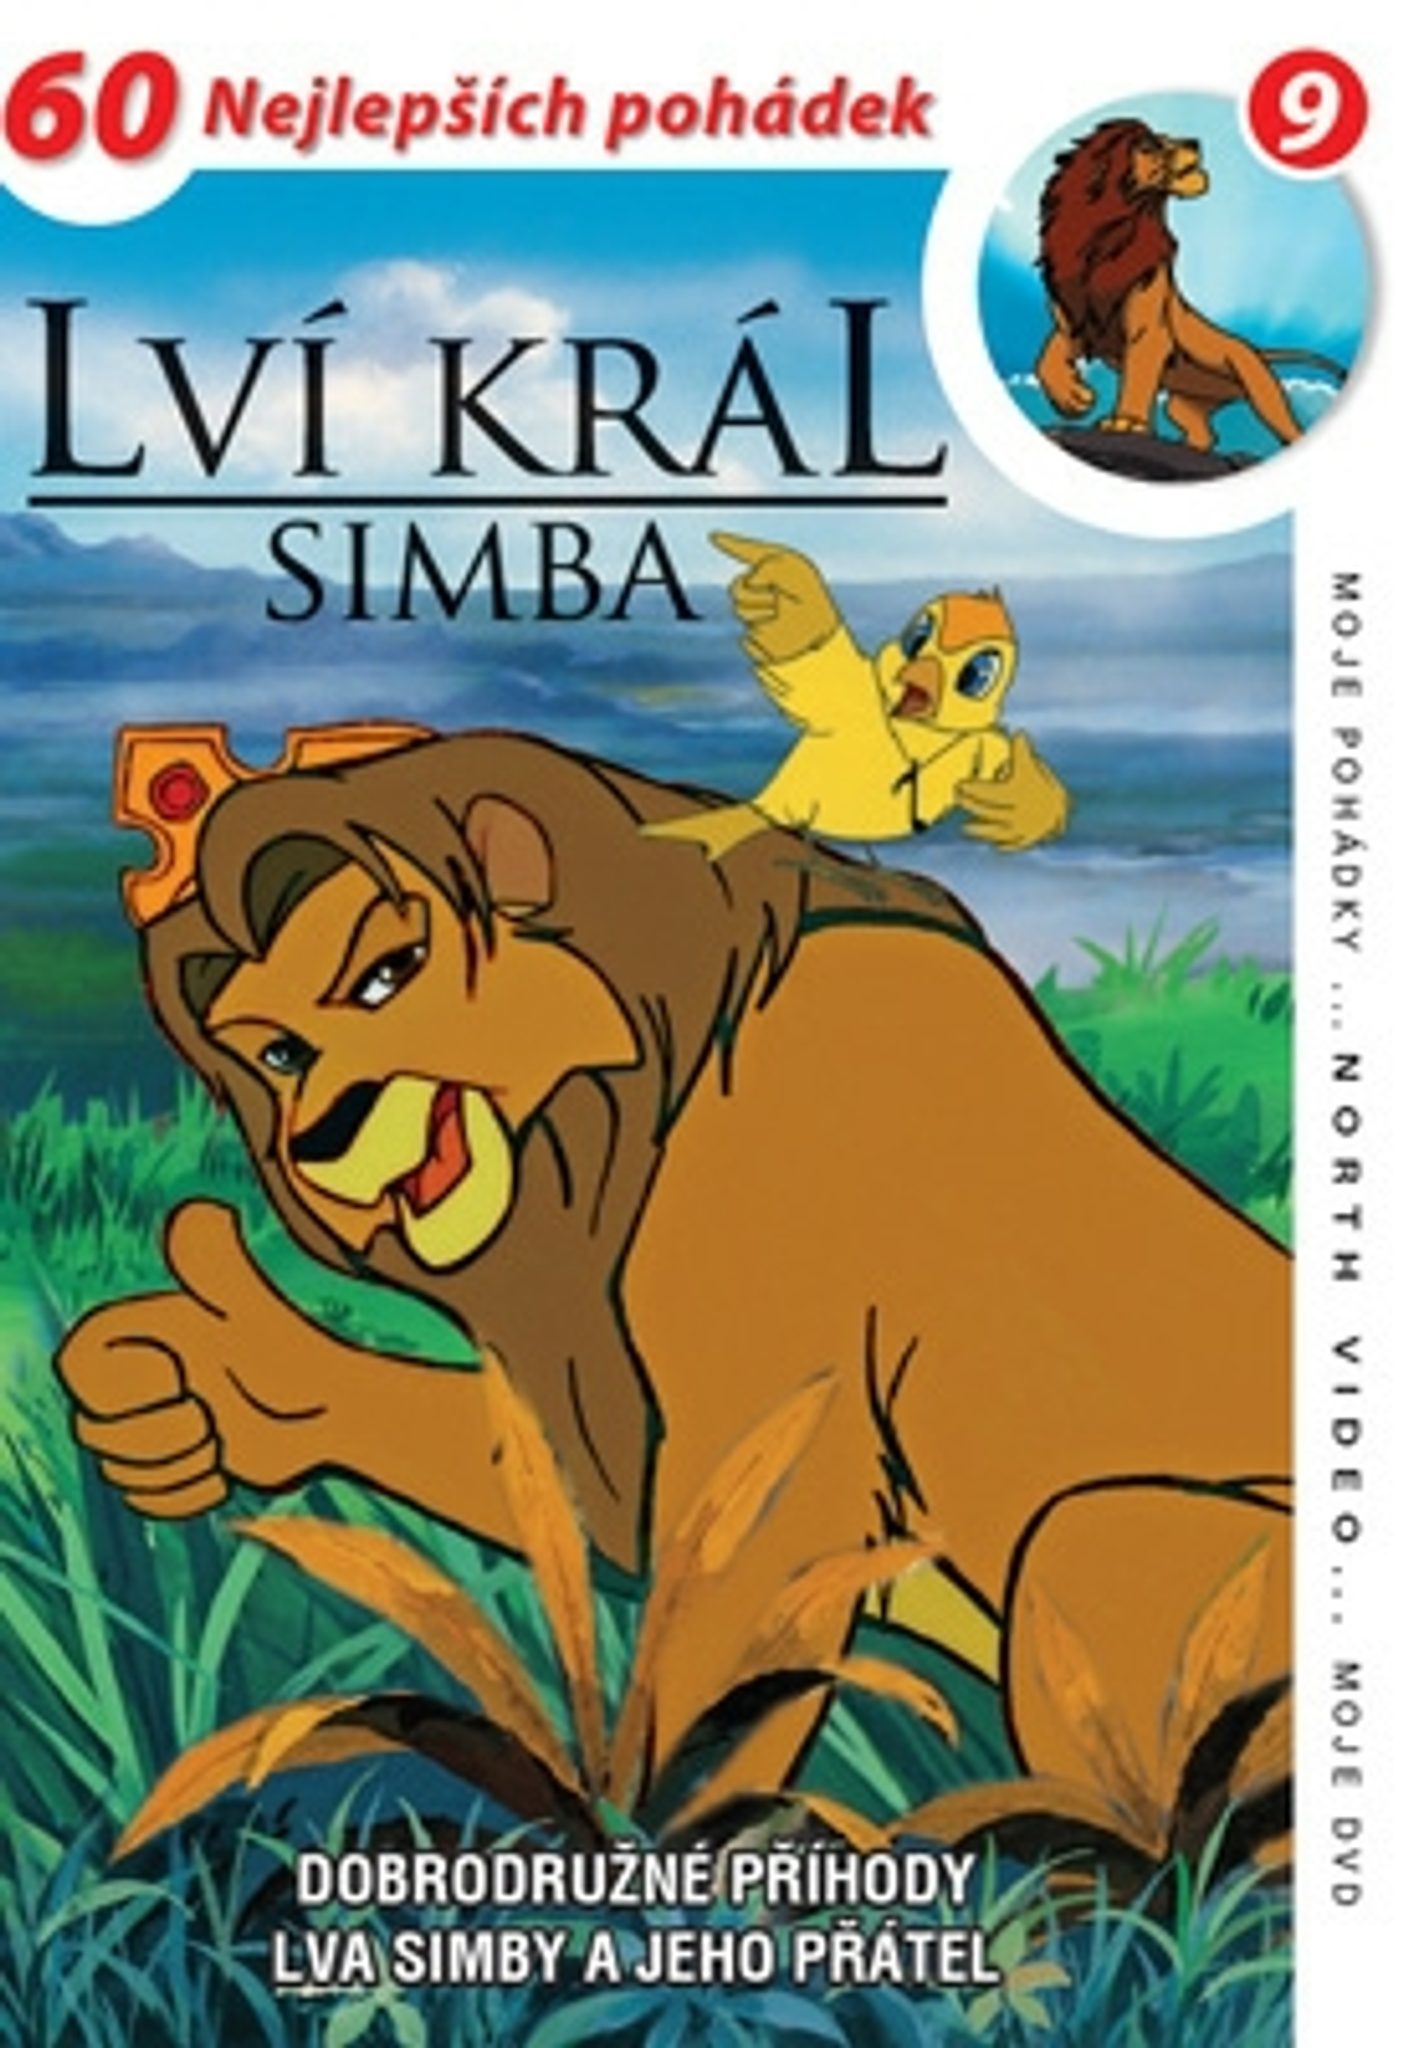 DVD Lví král - Simba 09